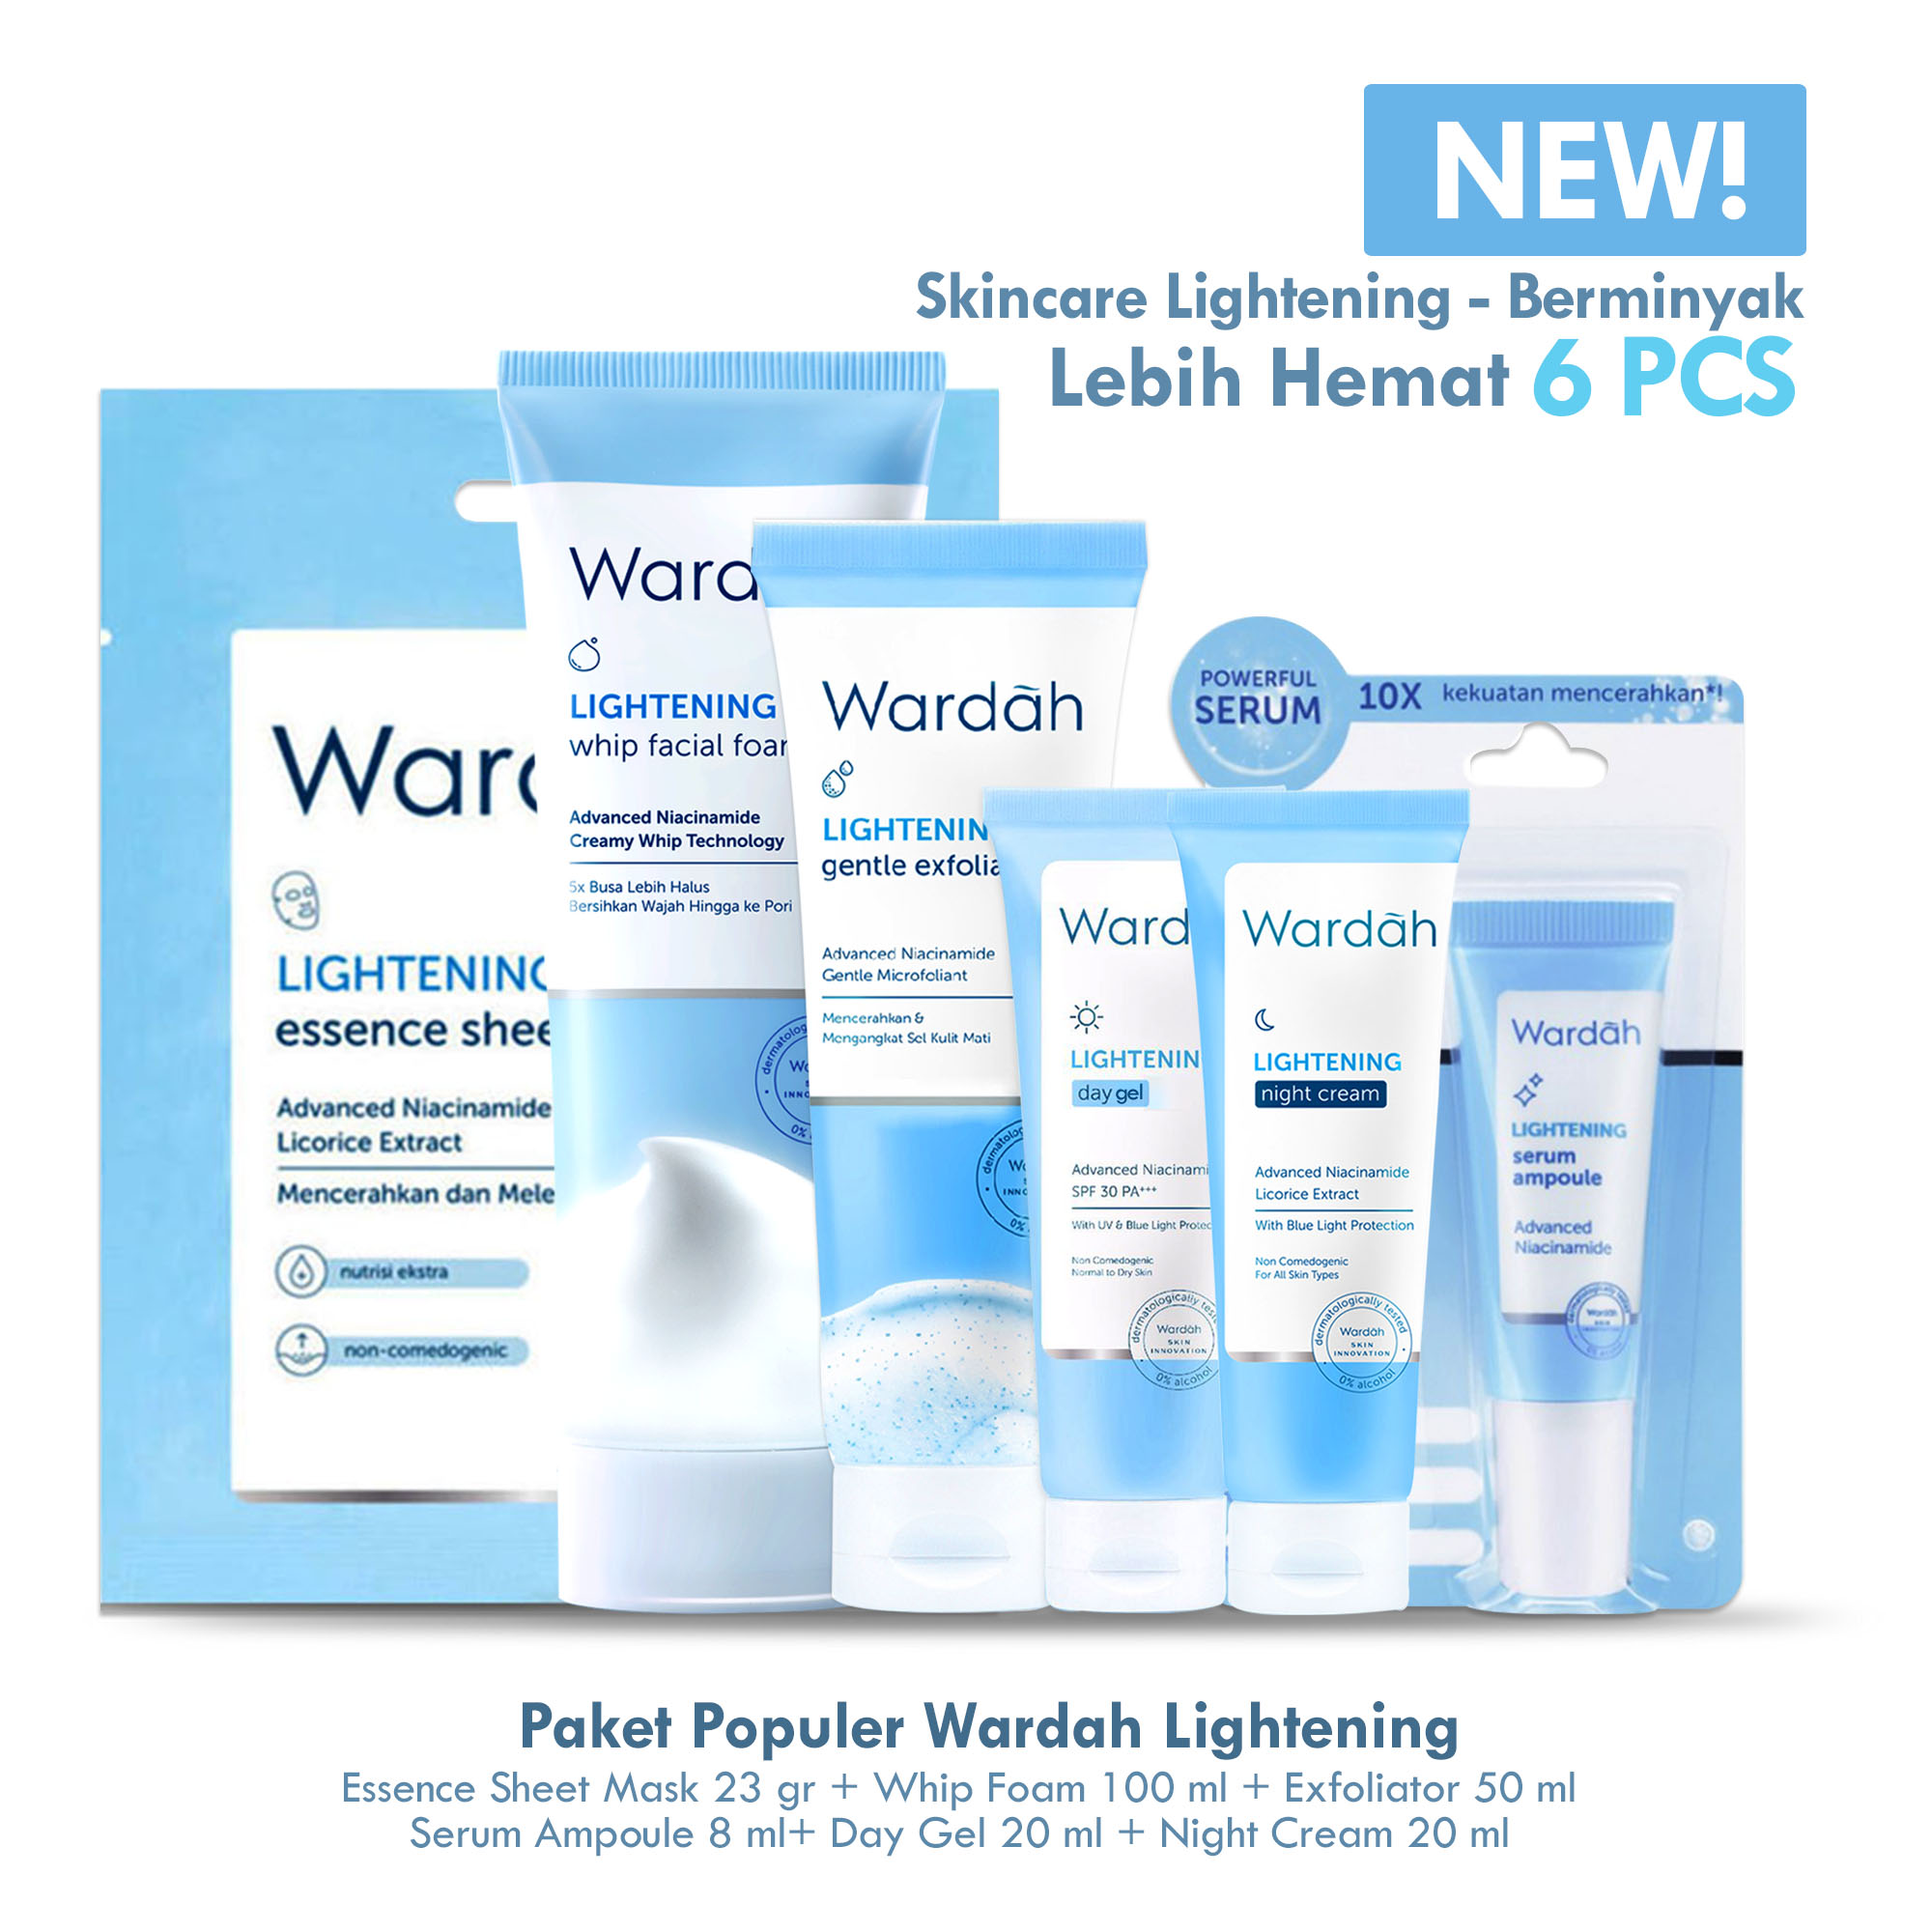 Paket Wardah Lightening 6 pcs (Sheet Mask 32 gr, Face Wash 100 ml, Gentle Exfoliator 50 ml, Day Cream / Gel 20 ml, Night Cream 20 ml, Serum 8 ml)